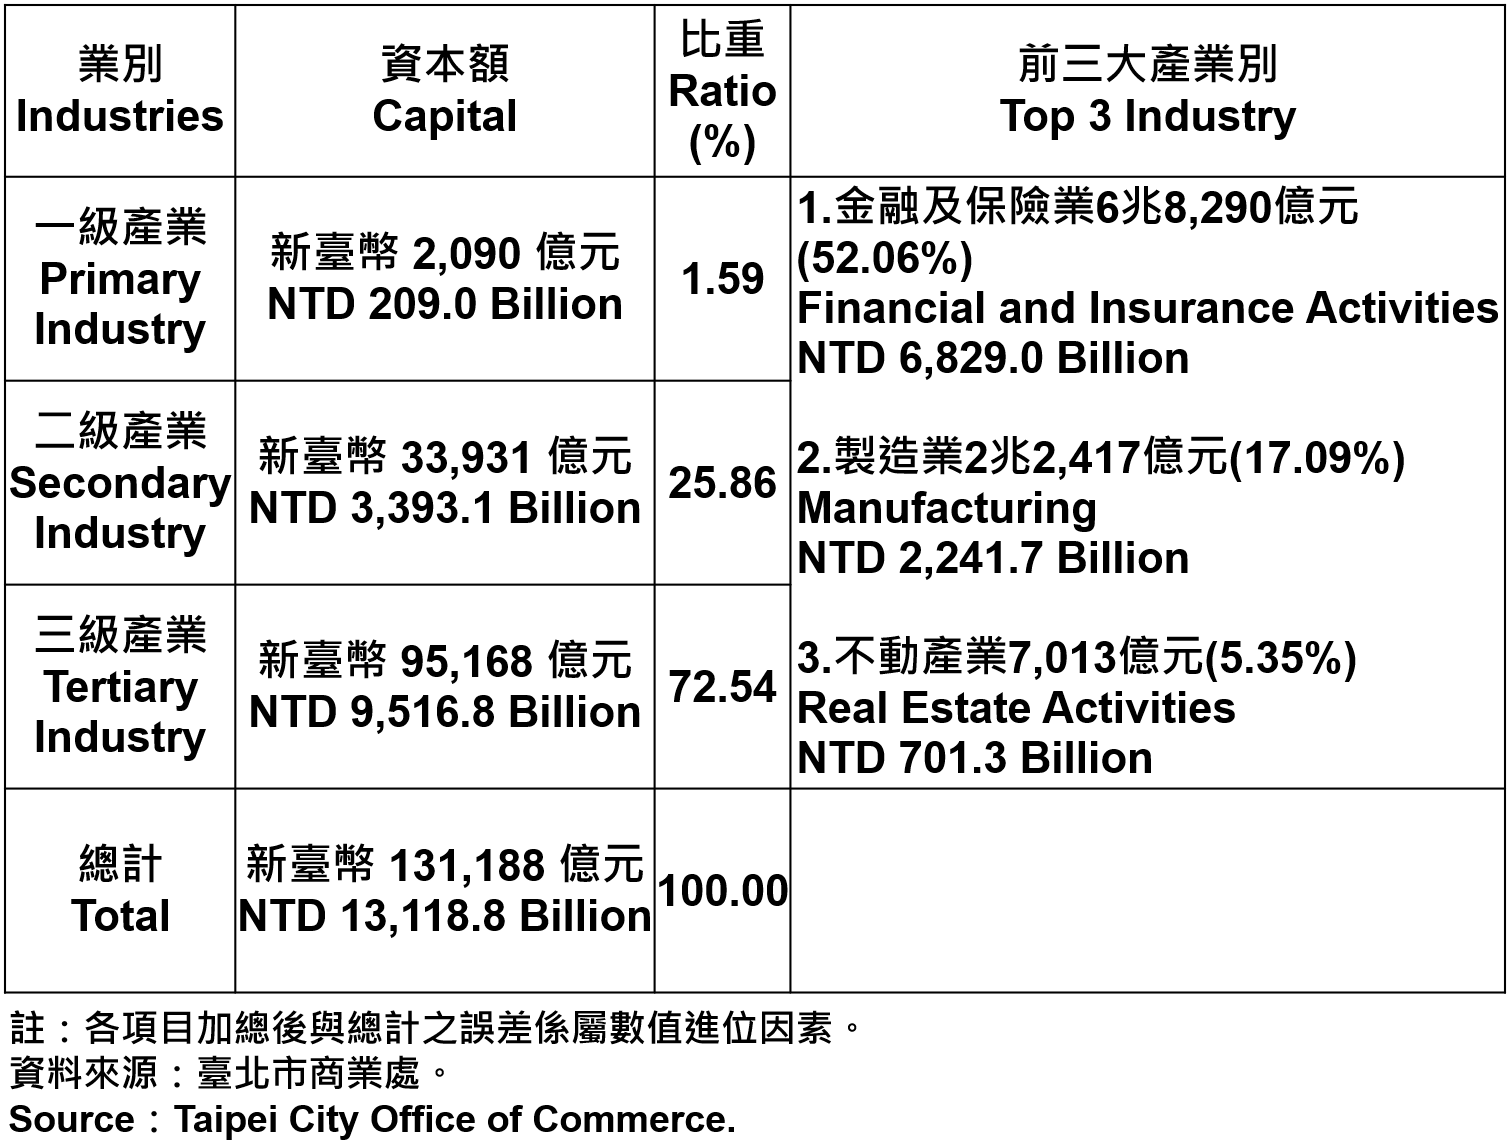 臺北市登記之公司資本額—2020Q1 Capital for the Companies and Firms Registered in Taipei City—2020Q1